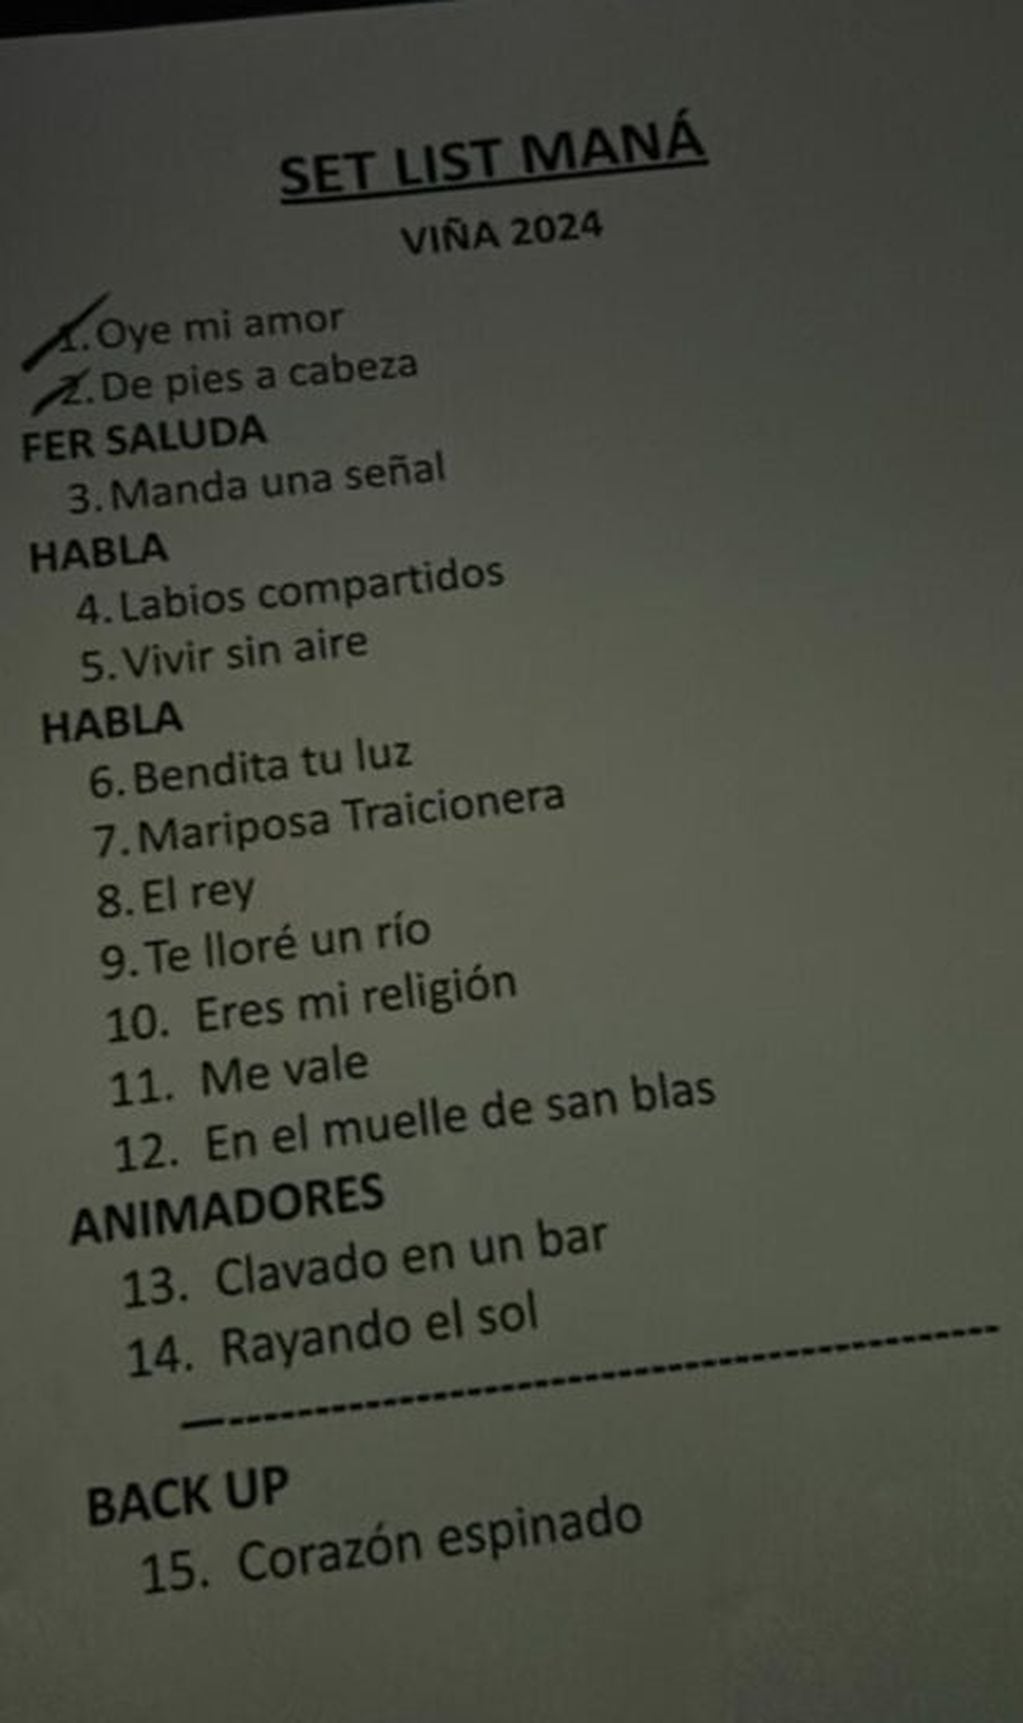 Setlist de Maná en Viña del Mar 2024: el show terminó antes de lo previsto sin "Corazón espinado"